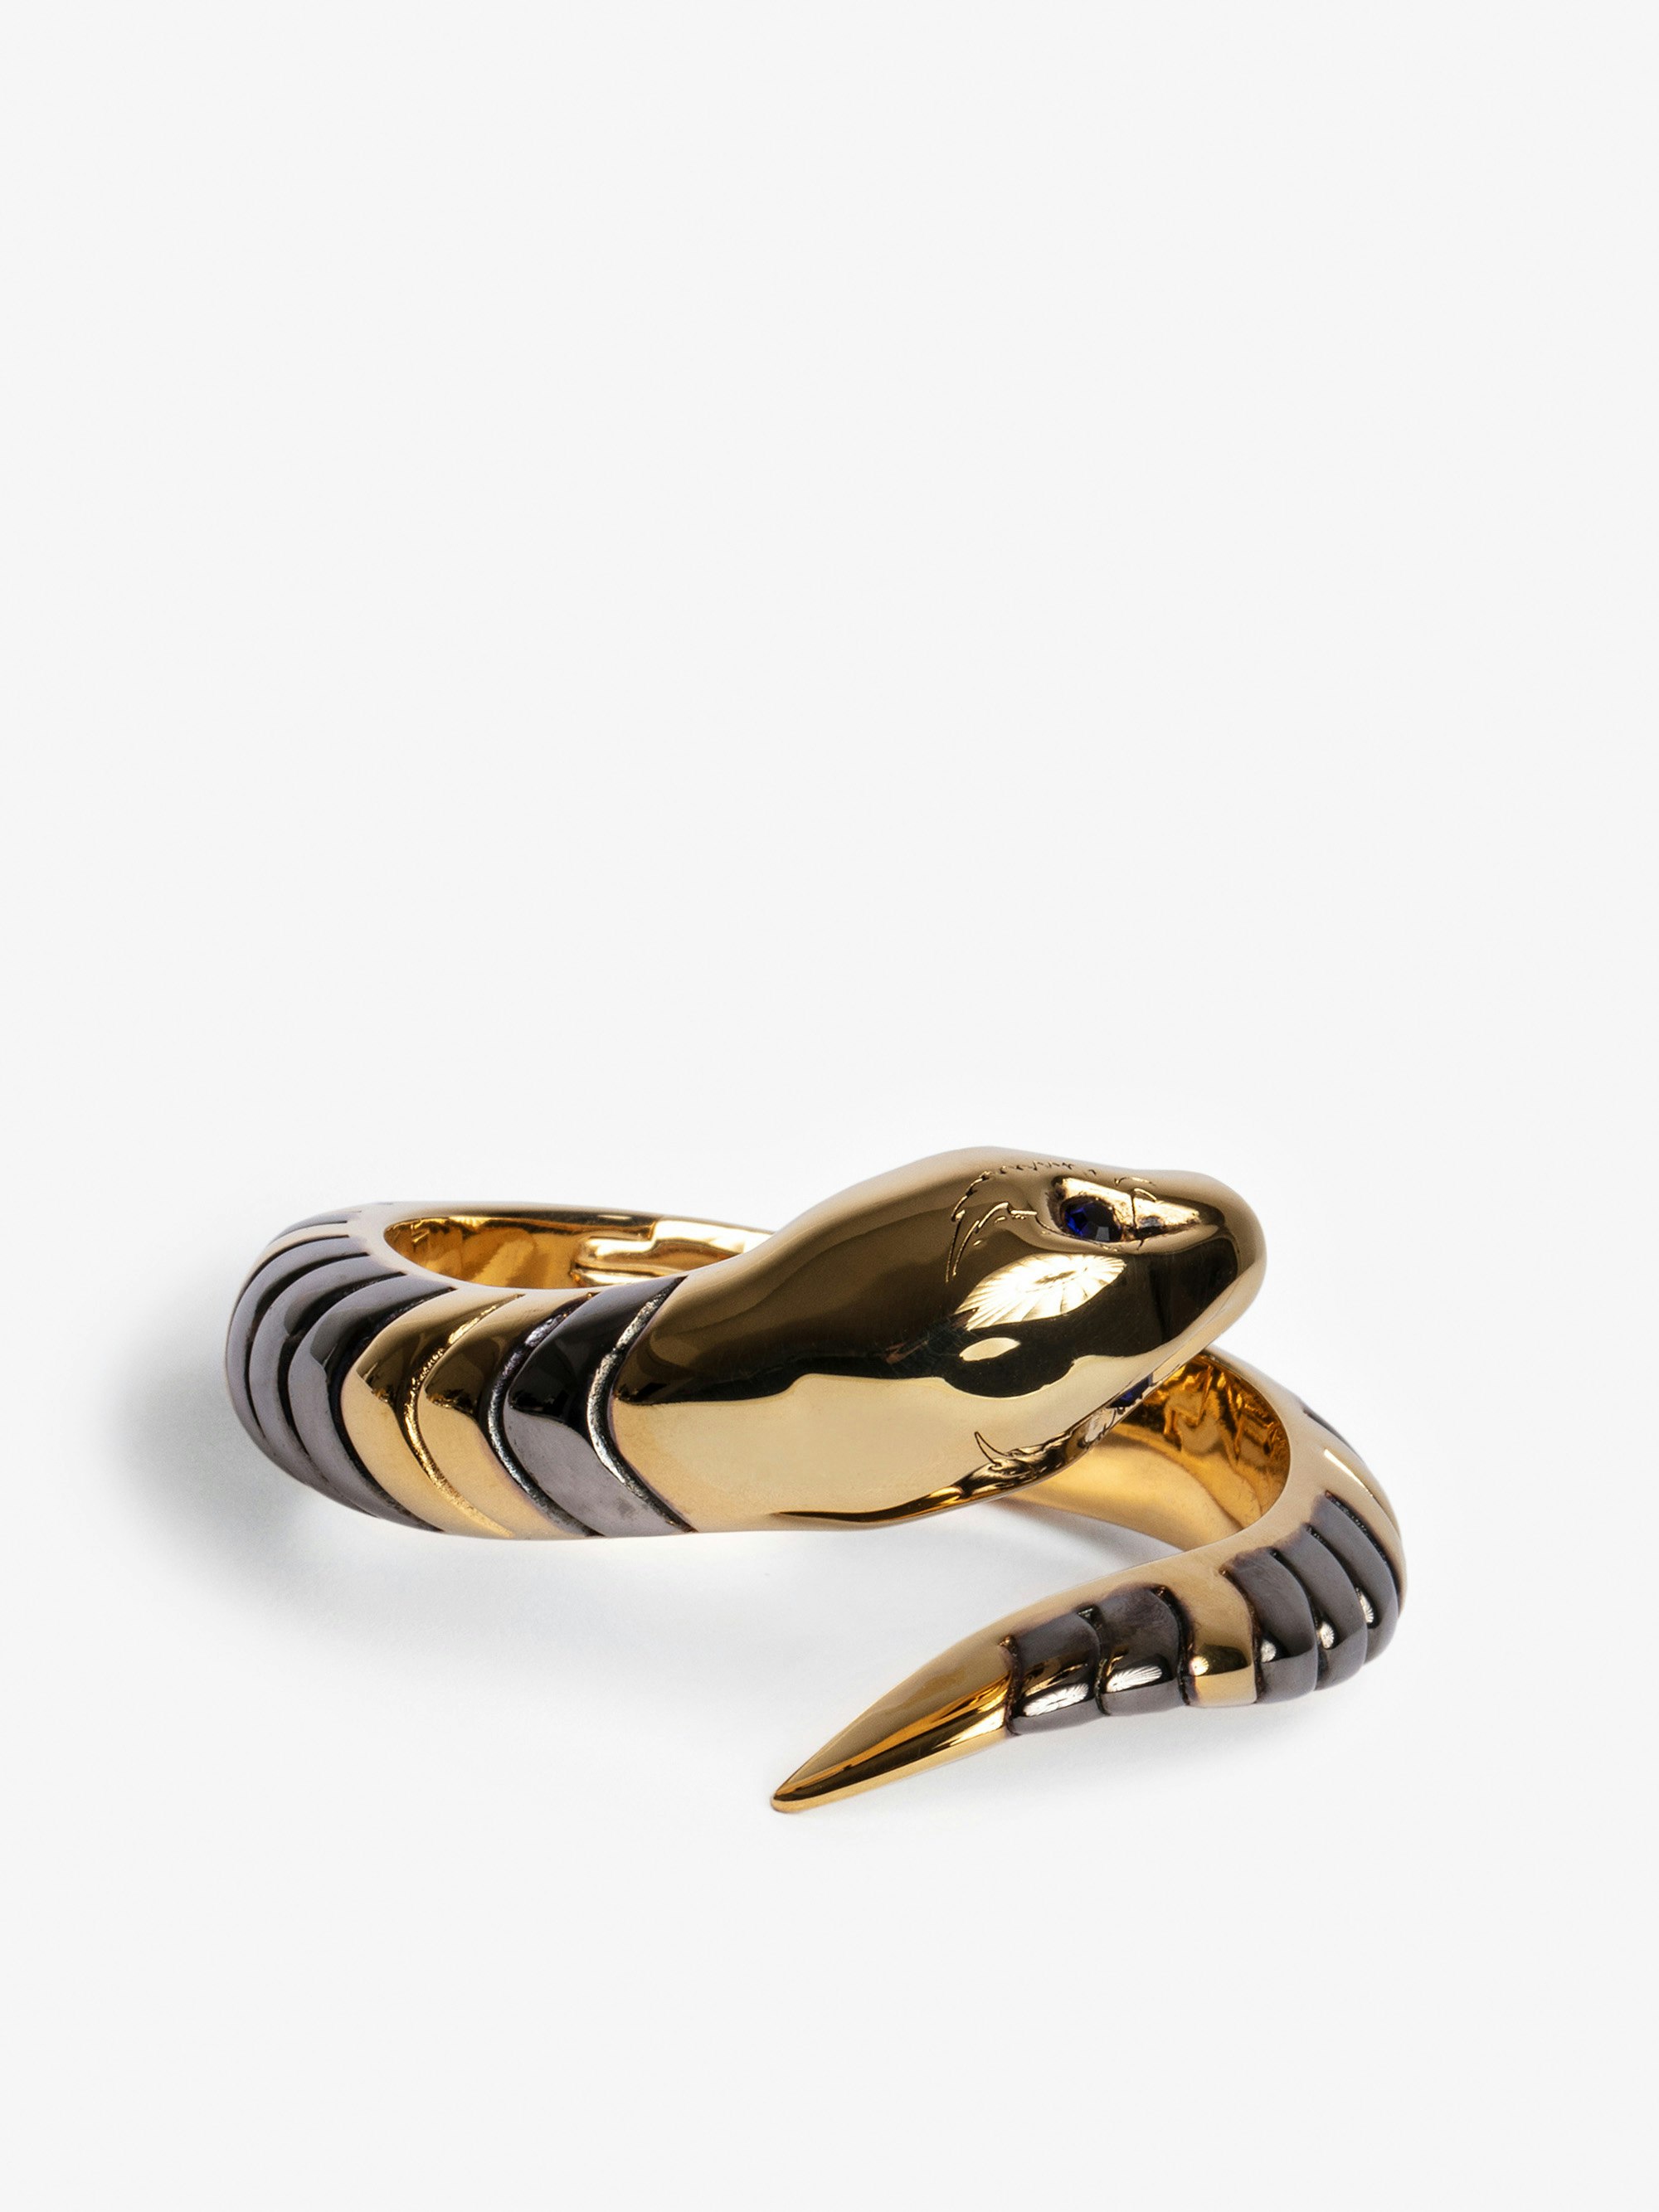 Pulsera Snake - Pulsera de latón dorada con serpiente.